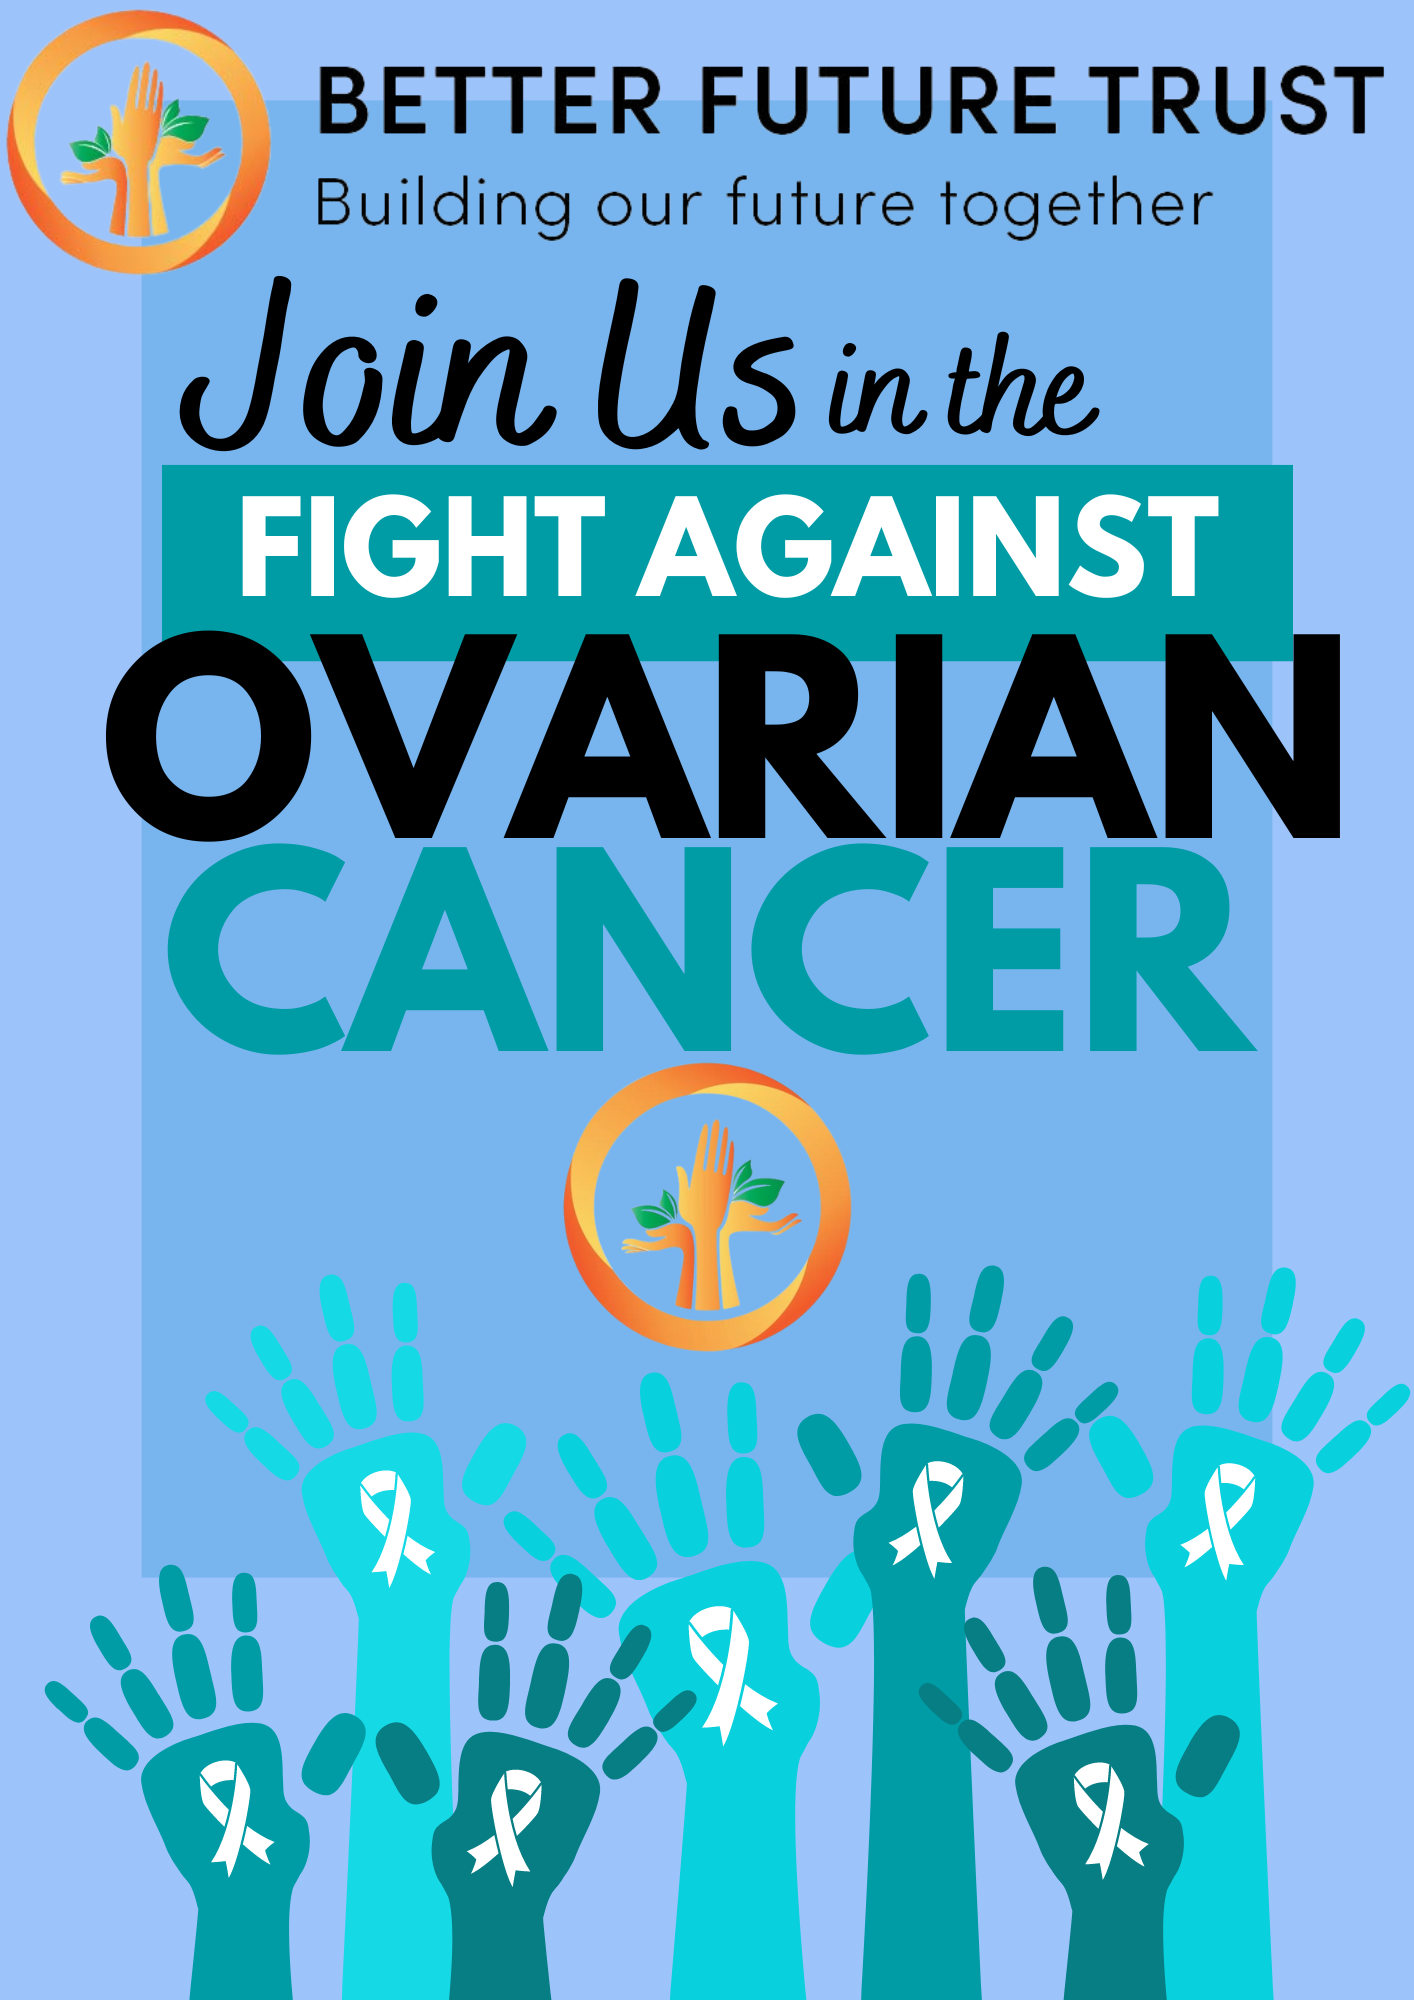 ovarian cancer flyer r0